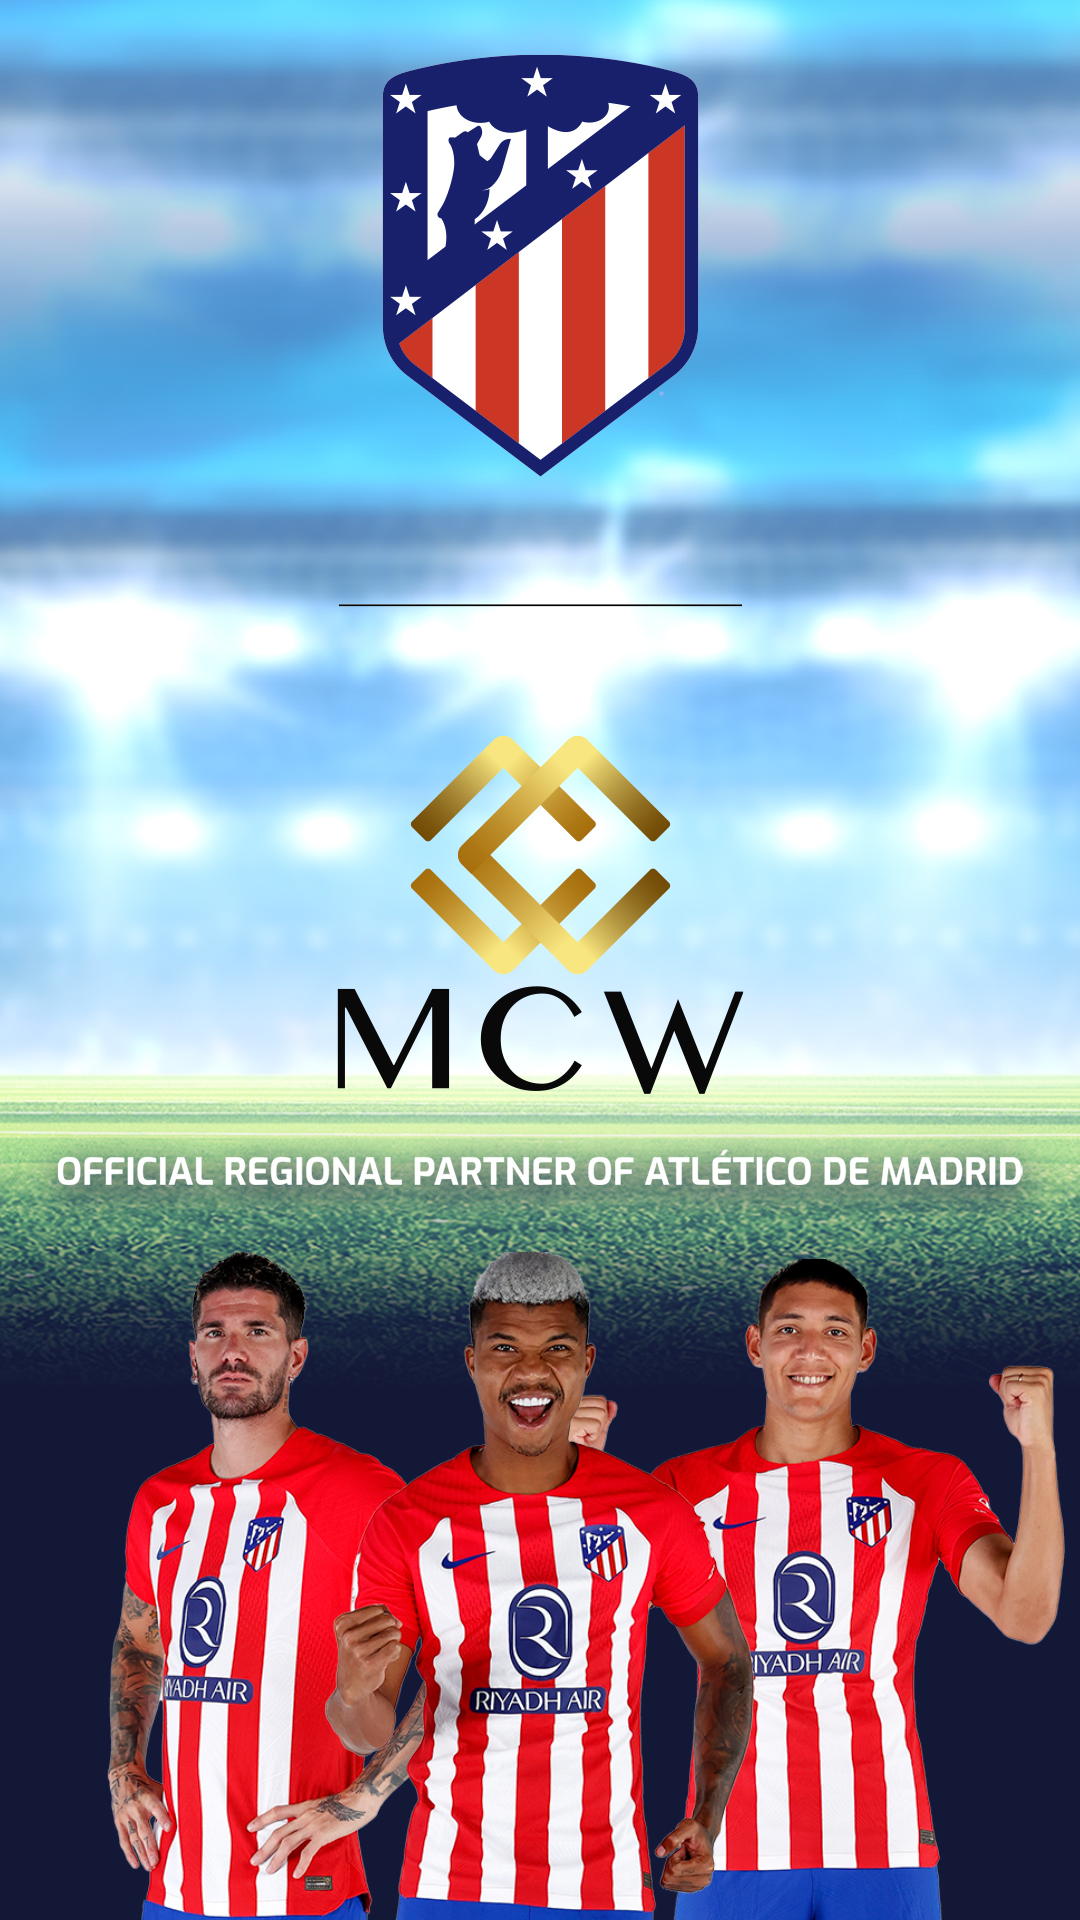 Atlético de Madrid announces Mega Casino World (MCW) as Official Regional Partner